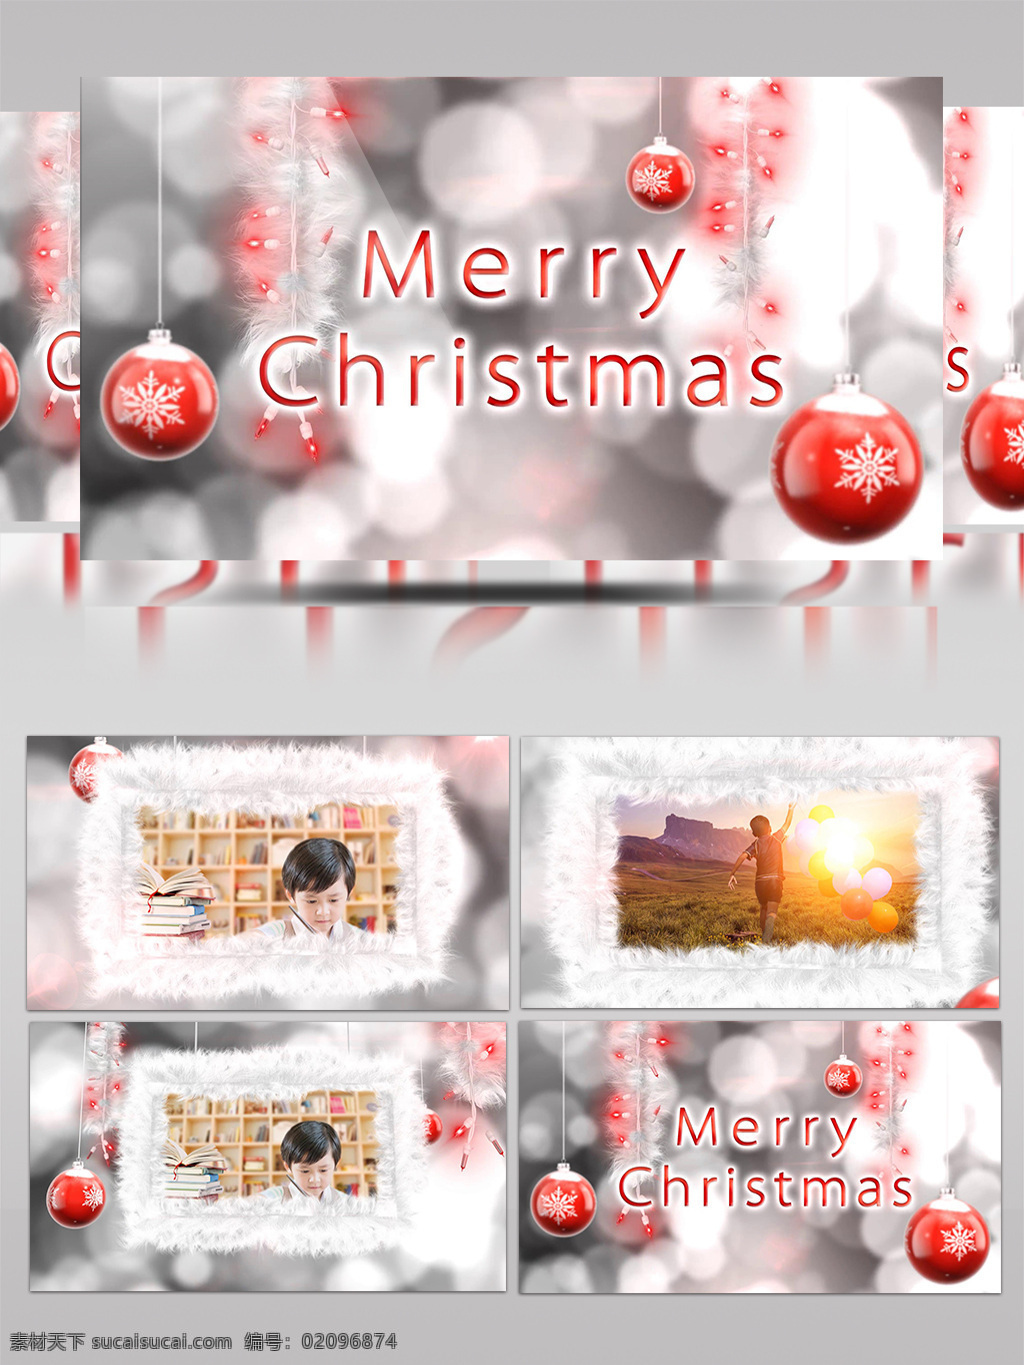 圣诞节 快乐 饰品 礼品 礼物 相册 视频 动画 圣诞快乐 圣诞 白色相框 白色圣诞树